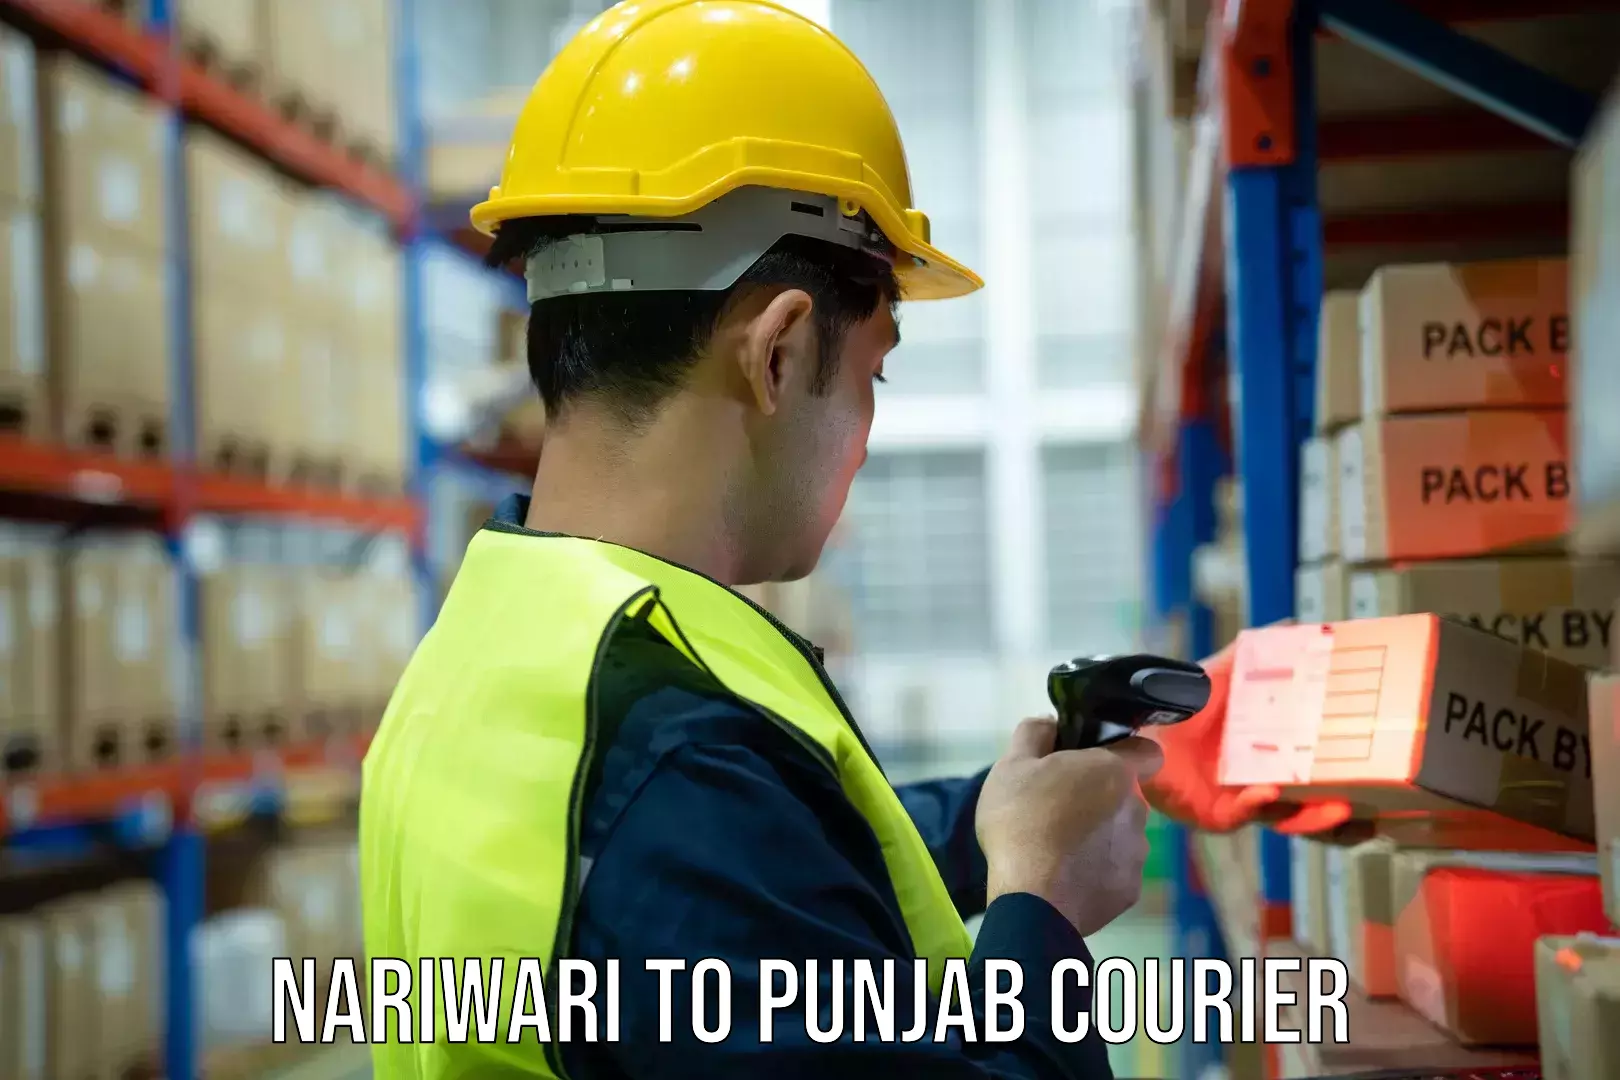 Global courier networks Nariwari to Punjab